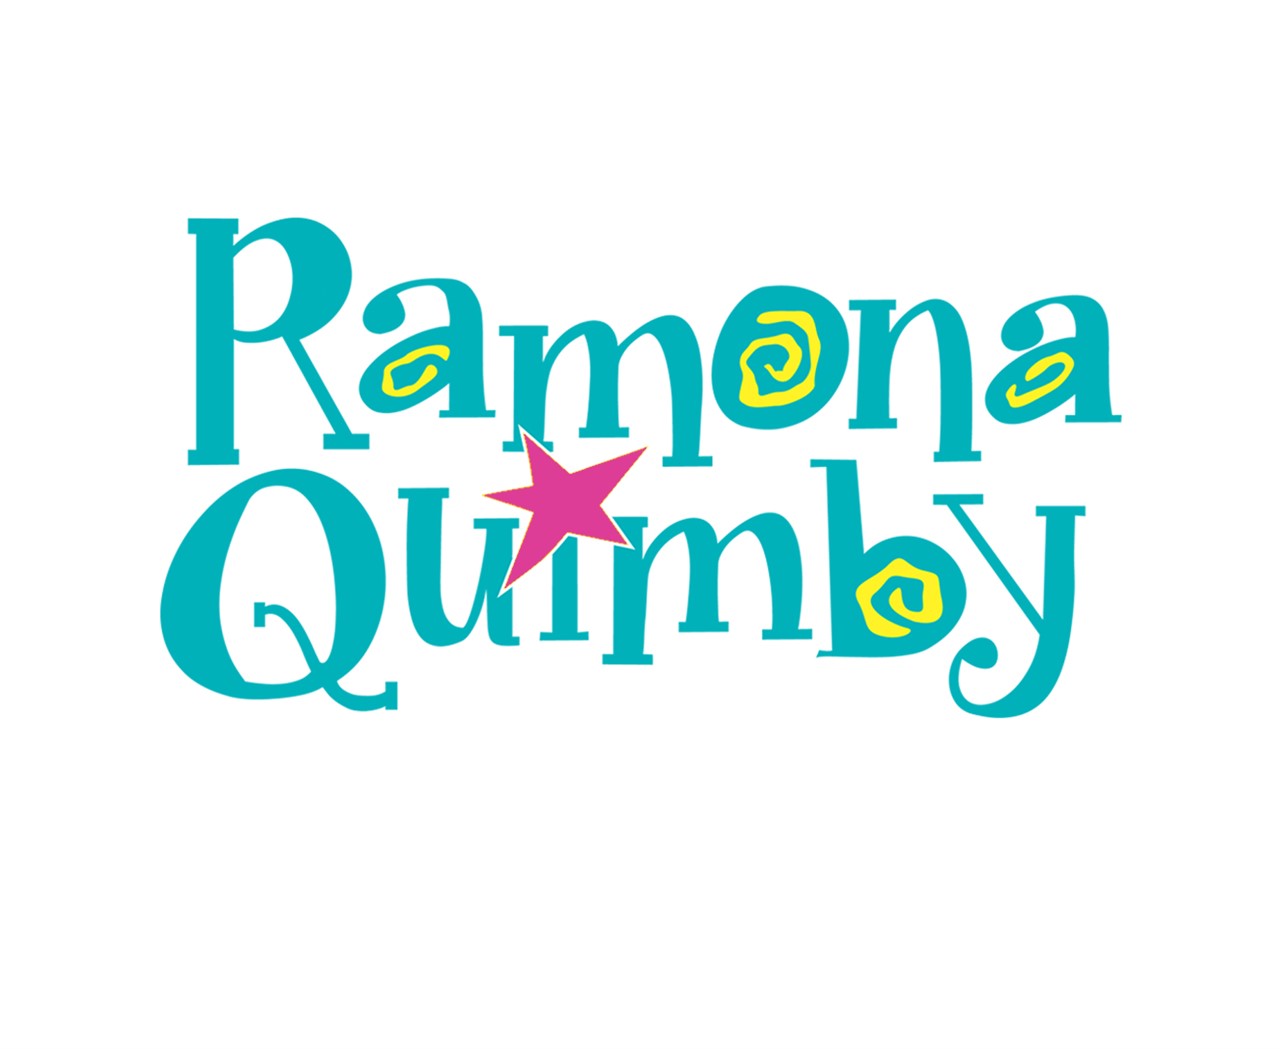 mfp_34673a0ee71f7e6da0b47046878bd6e2cyt1 Ramona Quimby Logo 4c.jpg